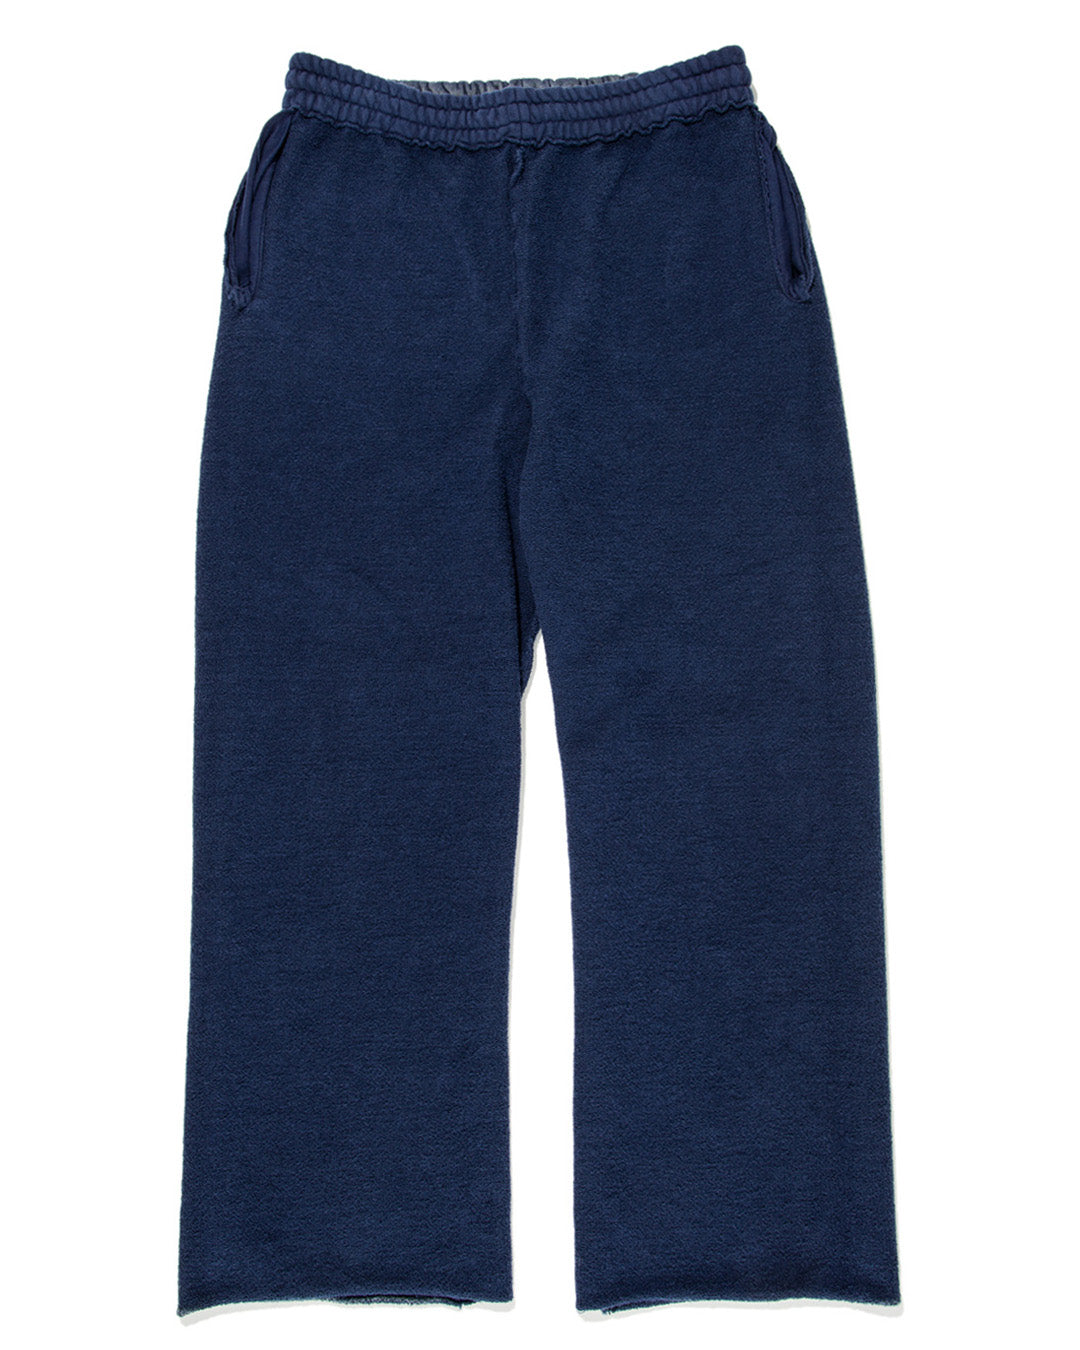 日本入荷 Russet Burbank Sweat Pants (Navy) XL 新品 - パンツ